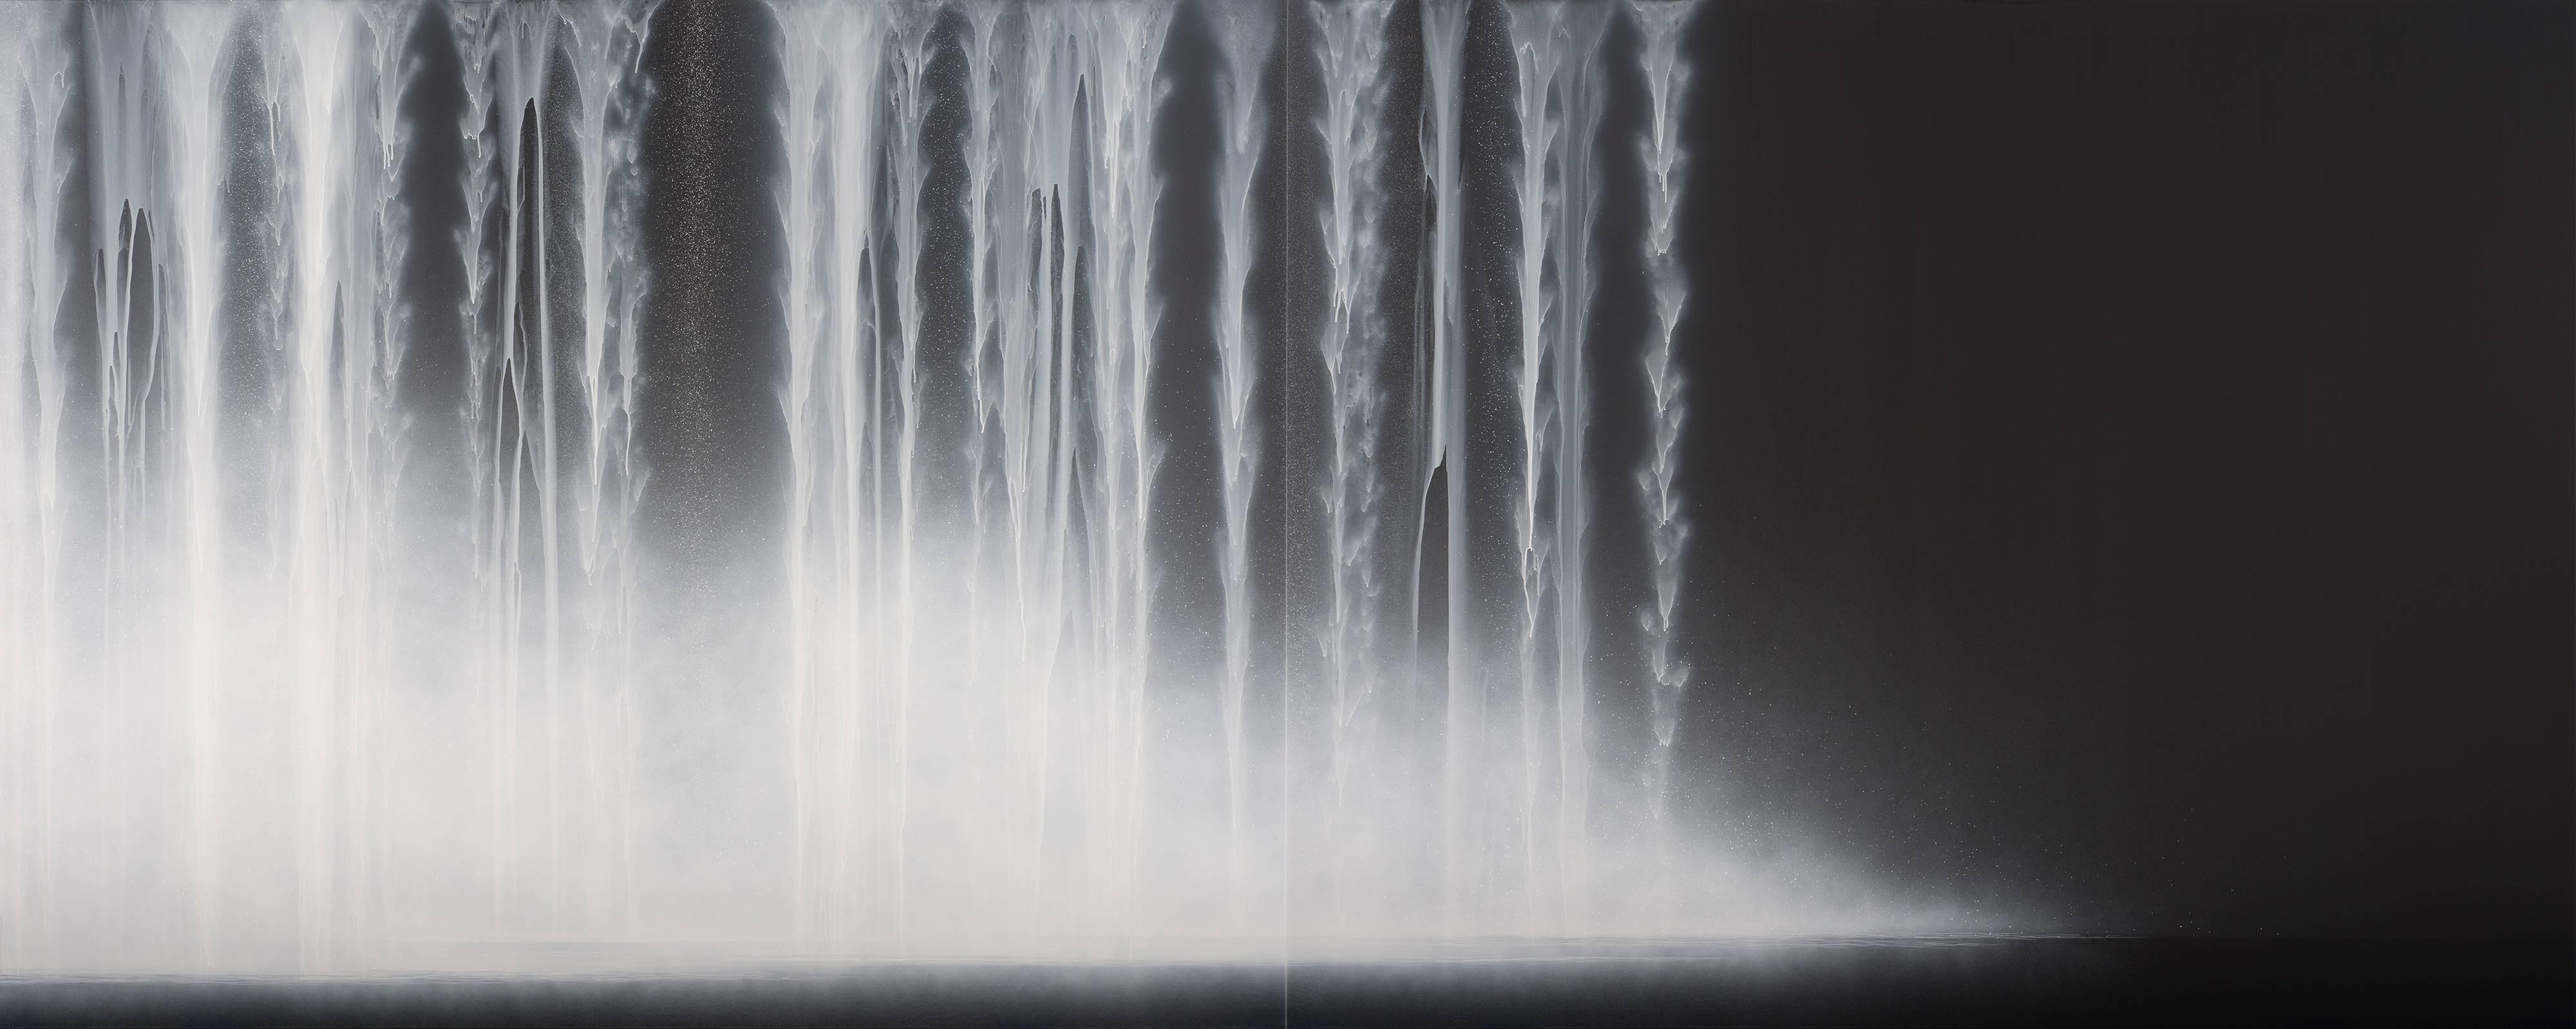 Hiroshi Senju Landscape Painting - Waterfall